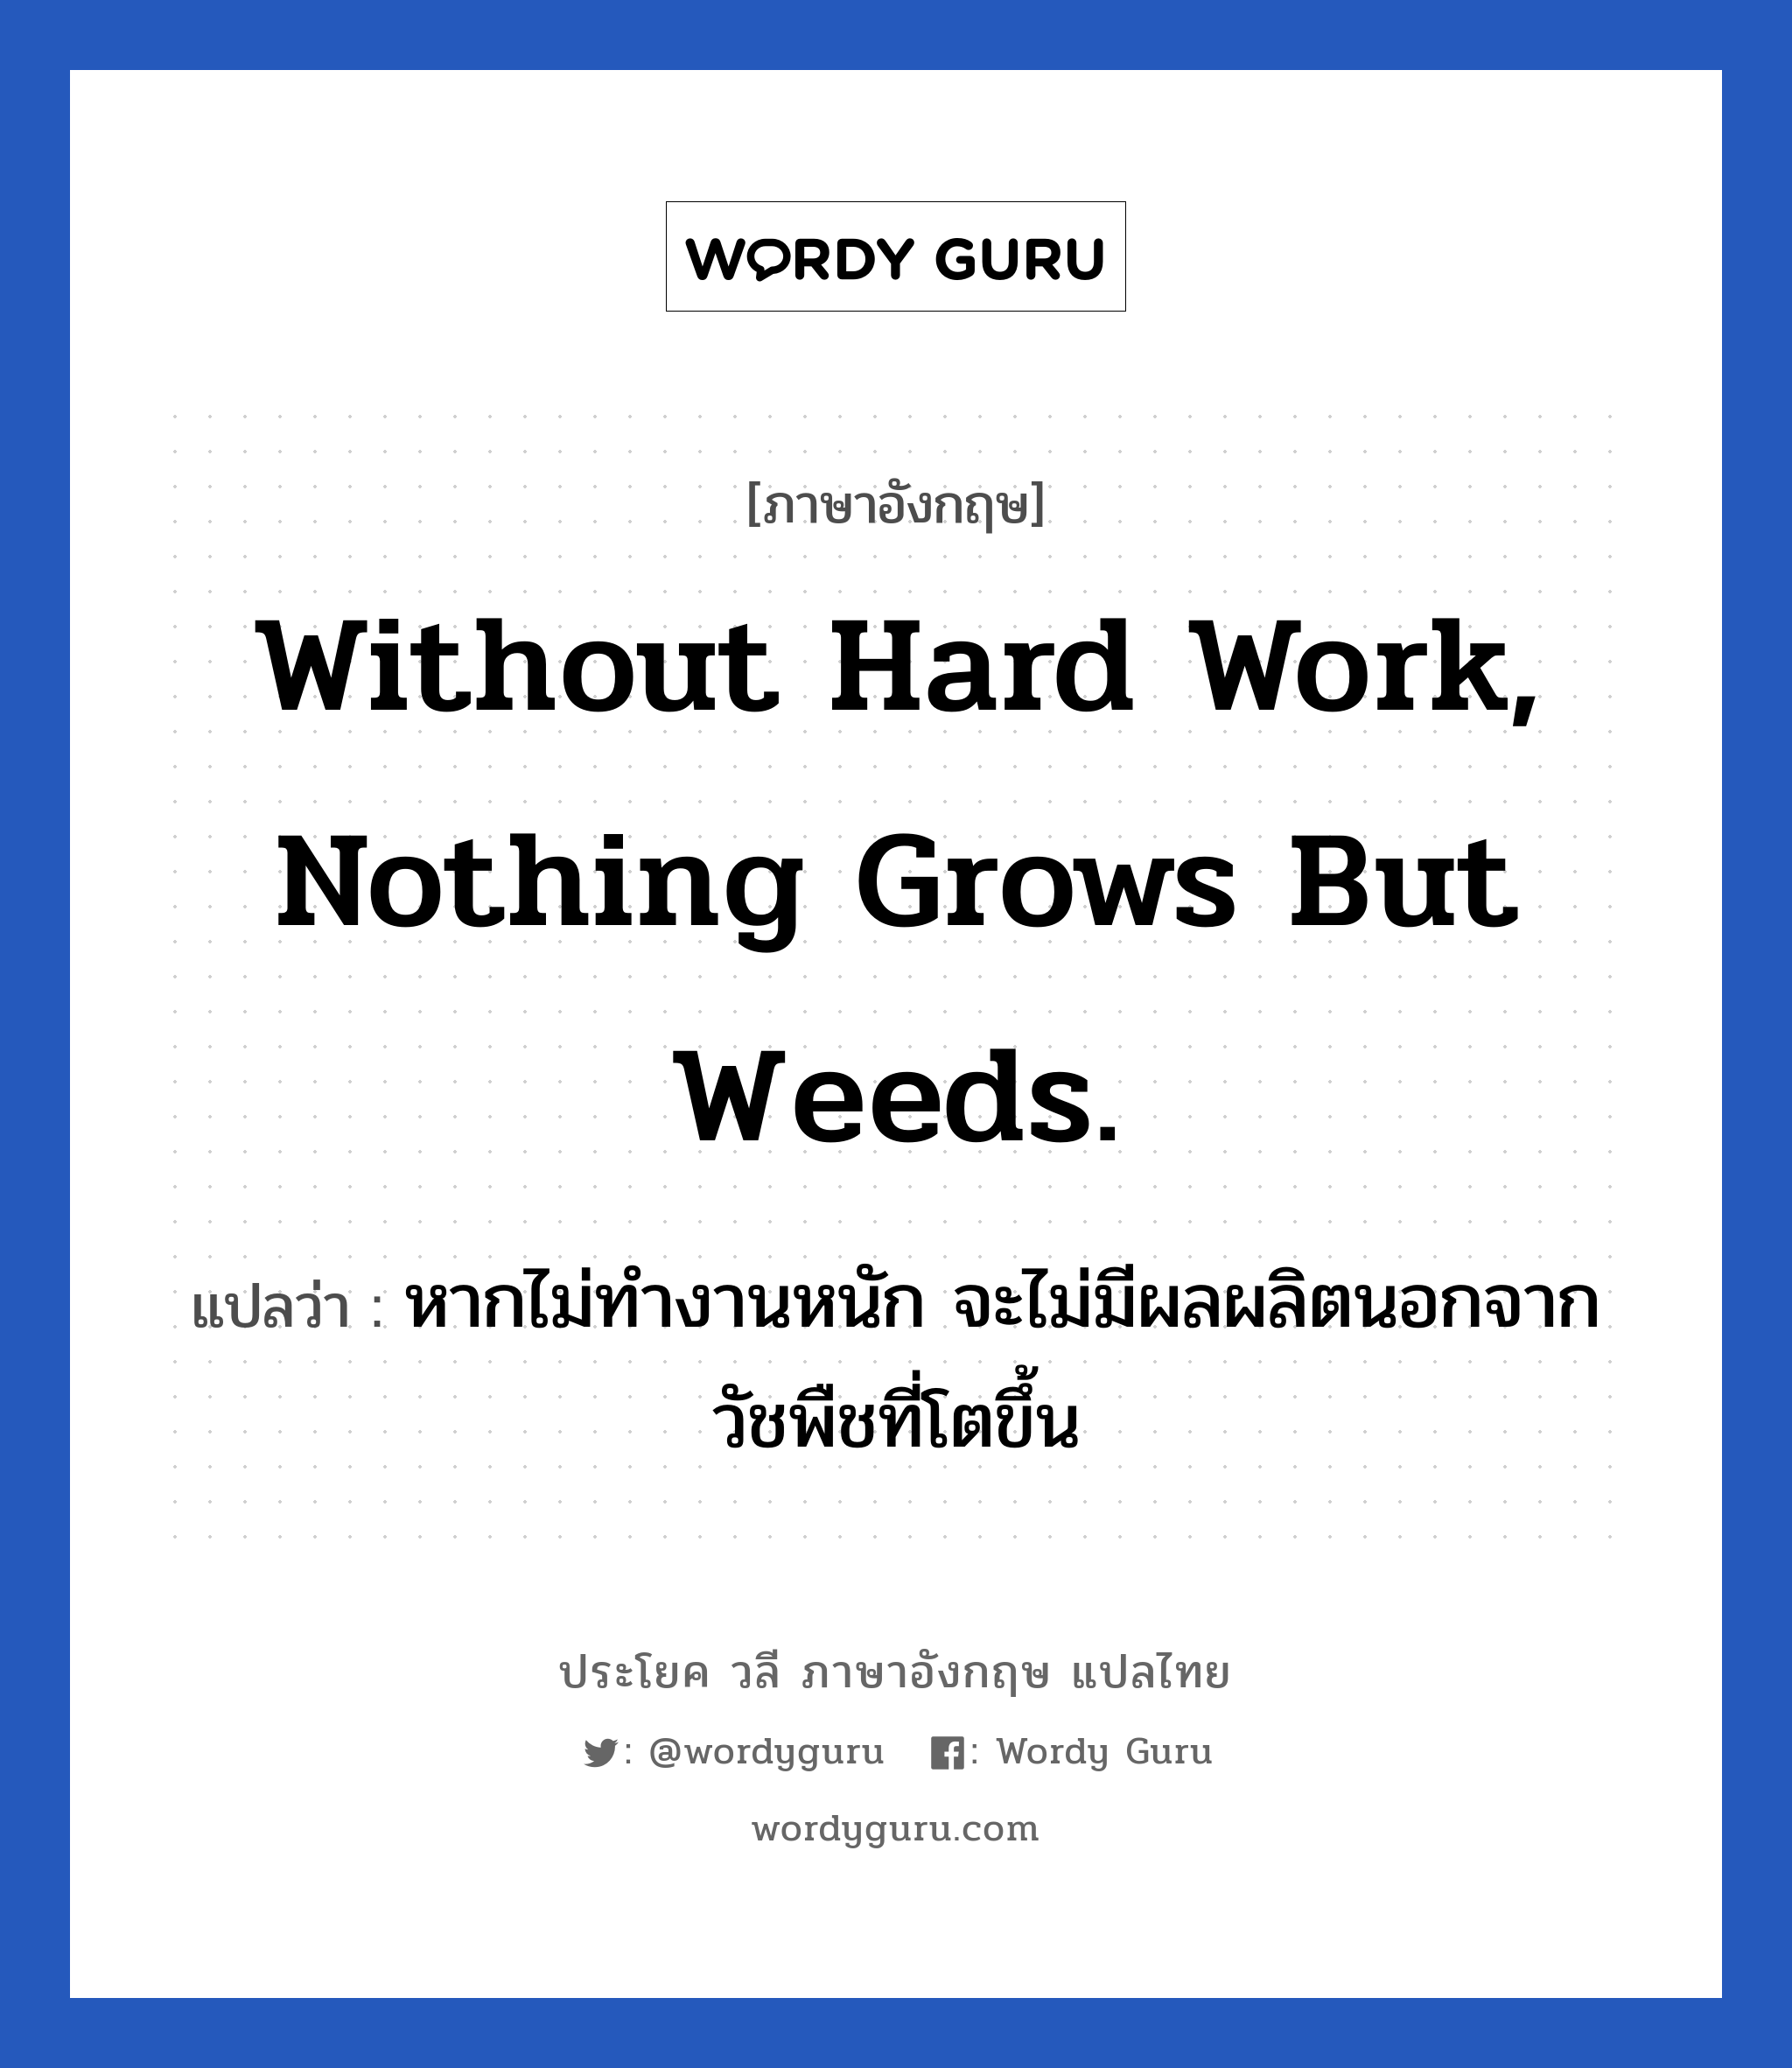 หากไม่ทำงานหนัก จะไม่มีผลผลิตนอกจากวัชพืชที่โตขึ้น ภาษาอังกฤษ?, วลีภาษาอังกฤษ หากไม่ทำงานหนัก จะไม่มีผลผลิตนอกจากวัชพืชที่โตขึ้น แปลว่า Without hard work, nothing grows but weeds. หมวด ในที่ทำงาน